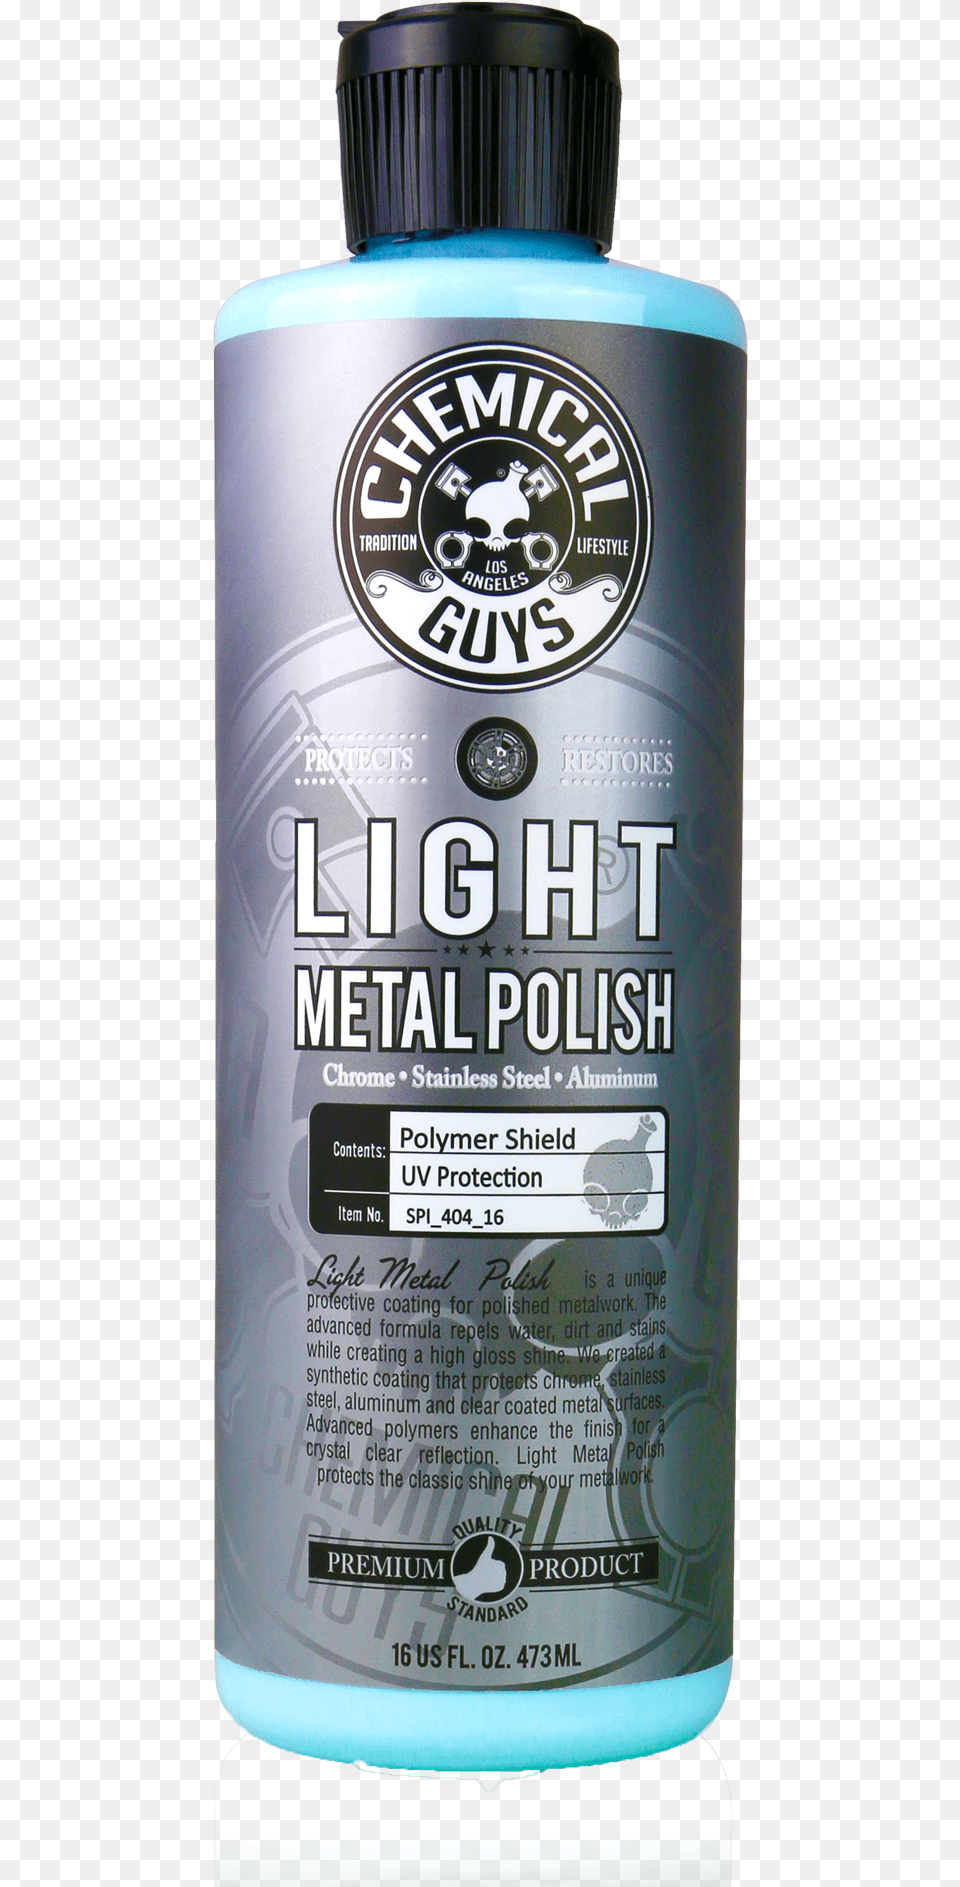 Light Metal Polish Chemical Guys Light Metal Polish, Bottle, Alcohol, Beer, Beverage Png Image